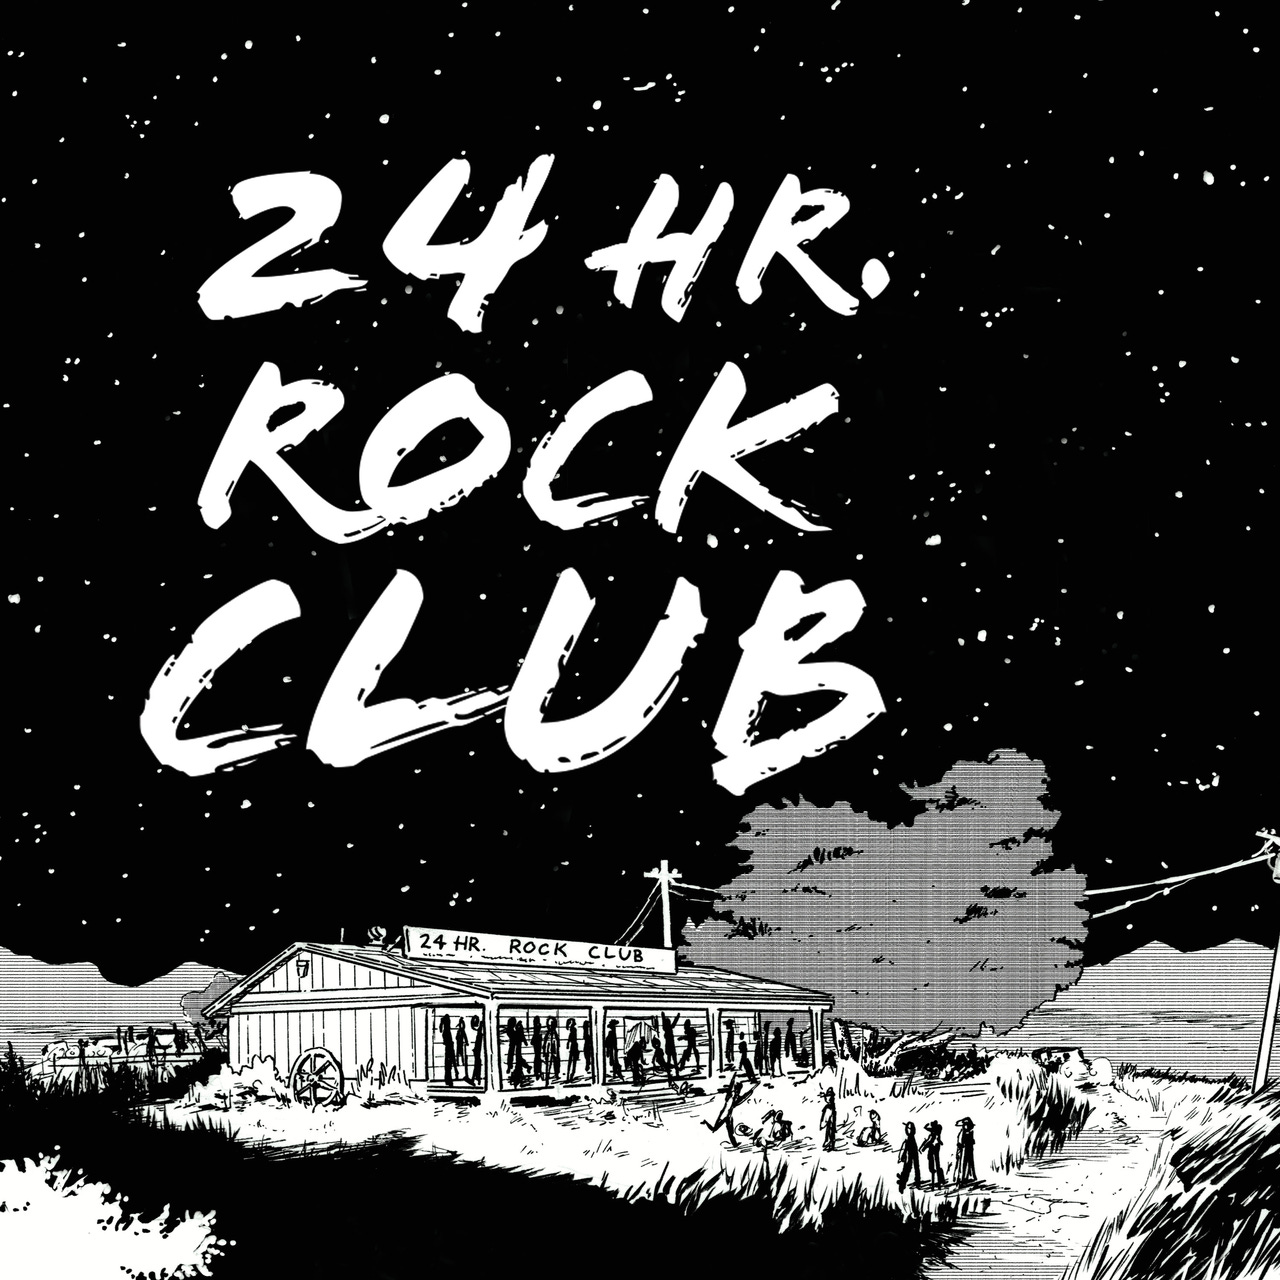 24 hr. Rock Club